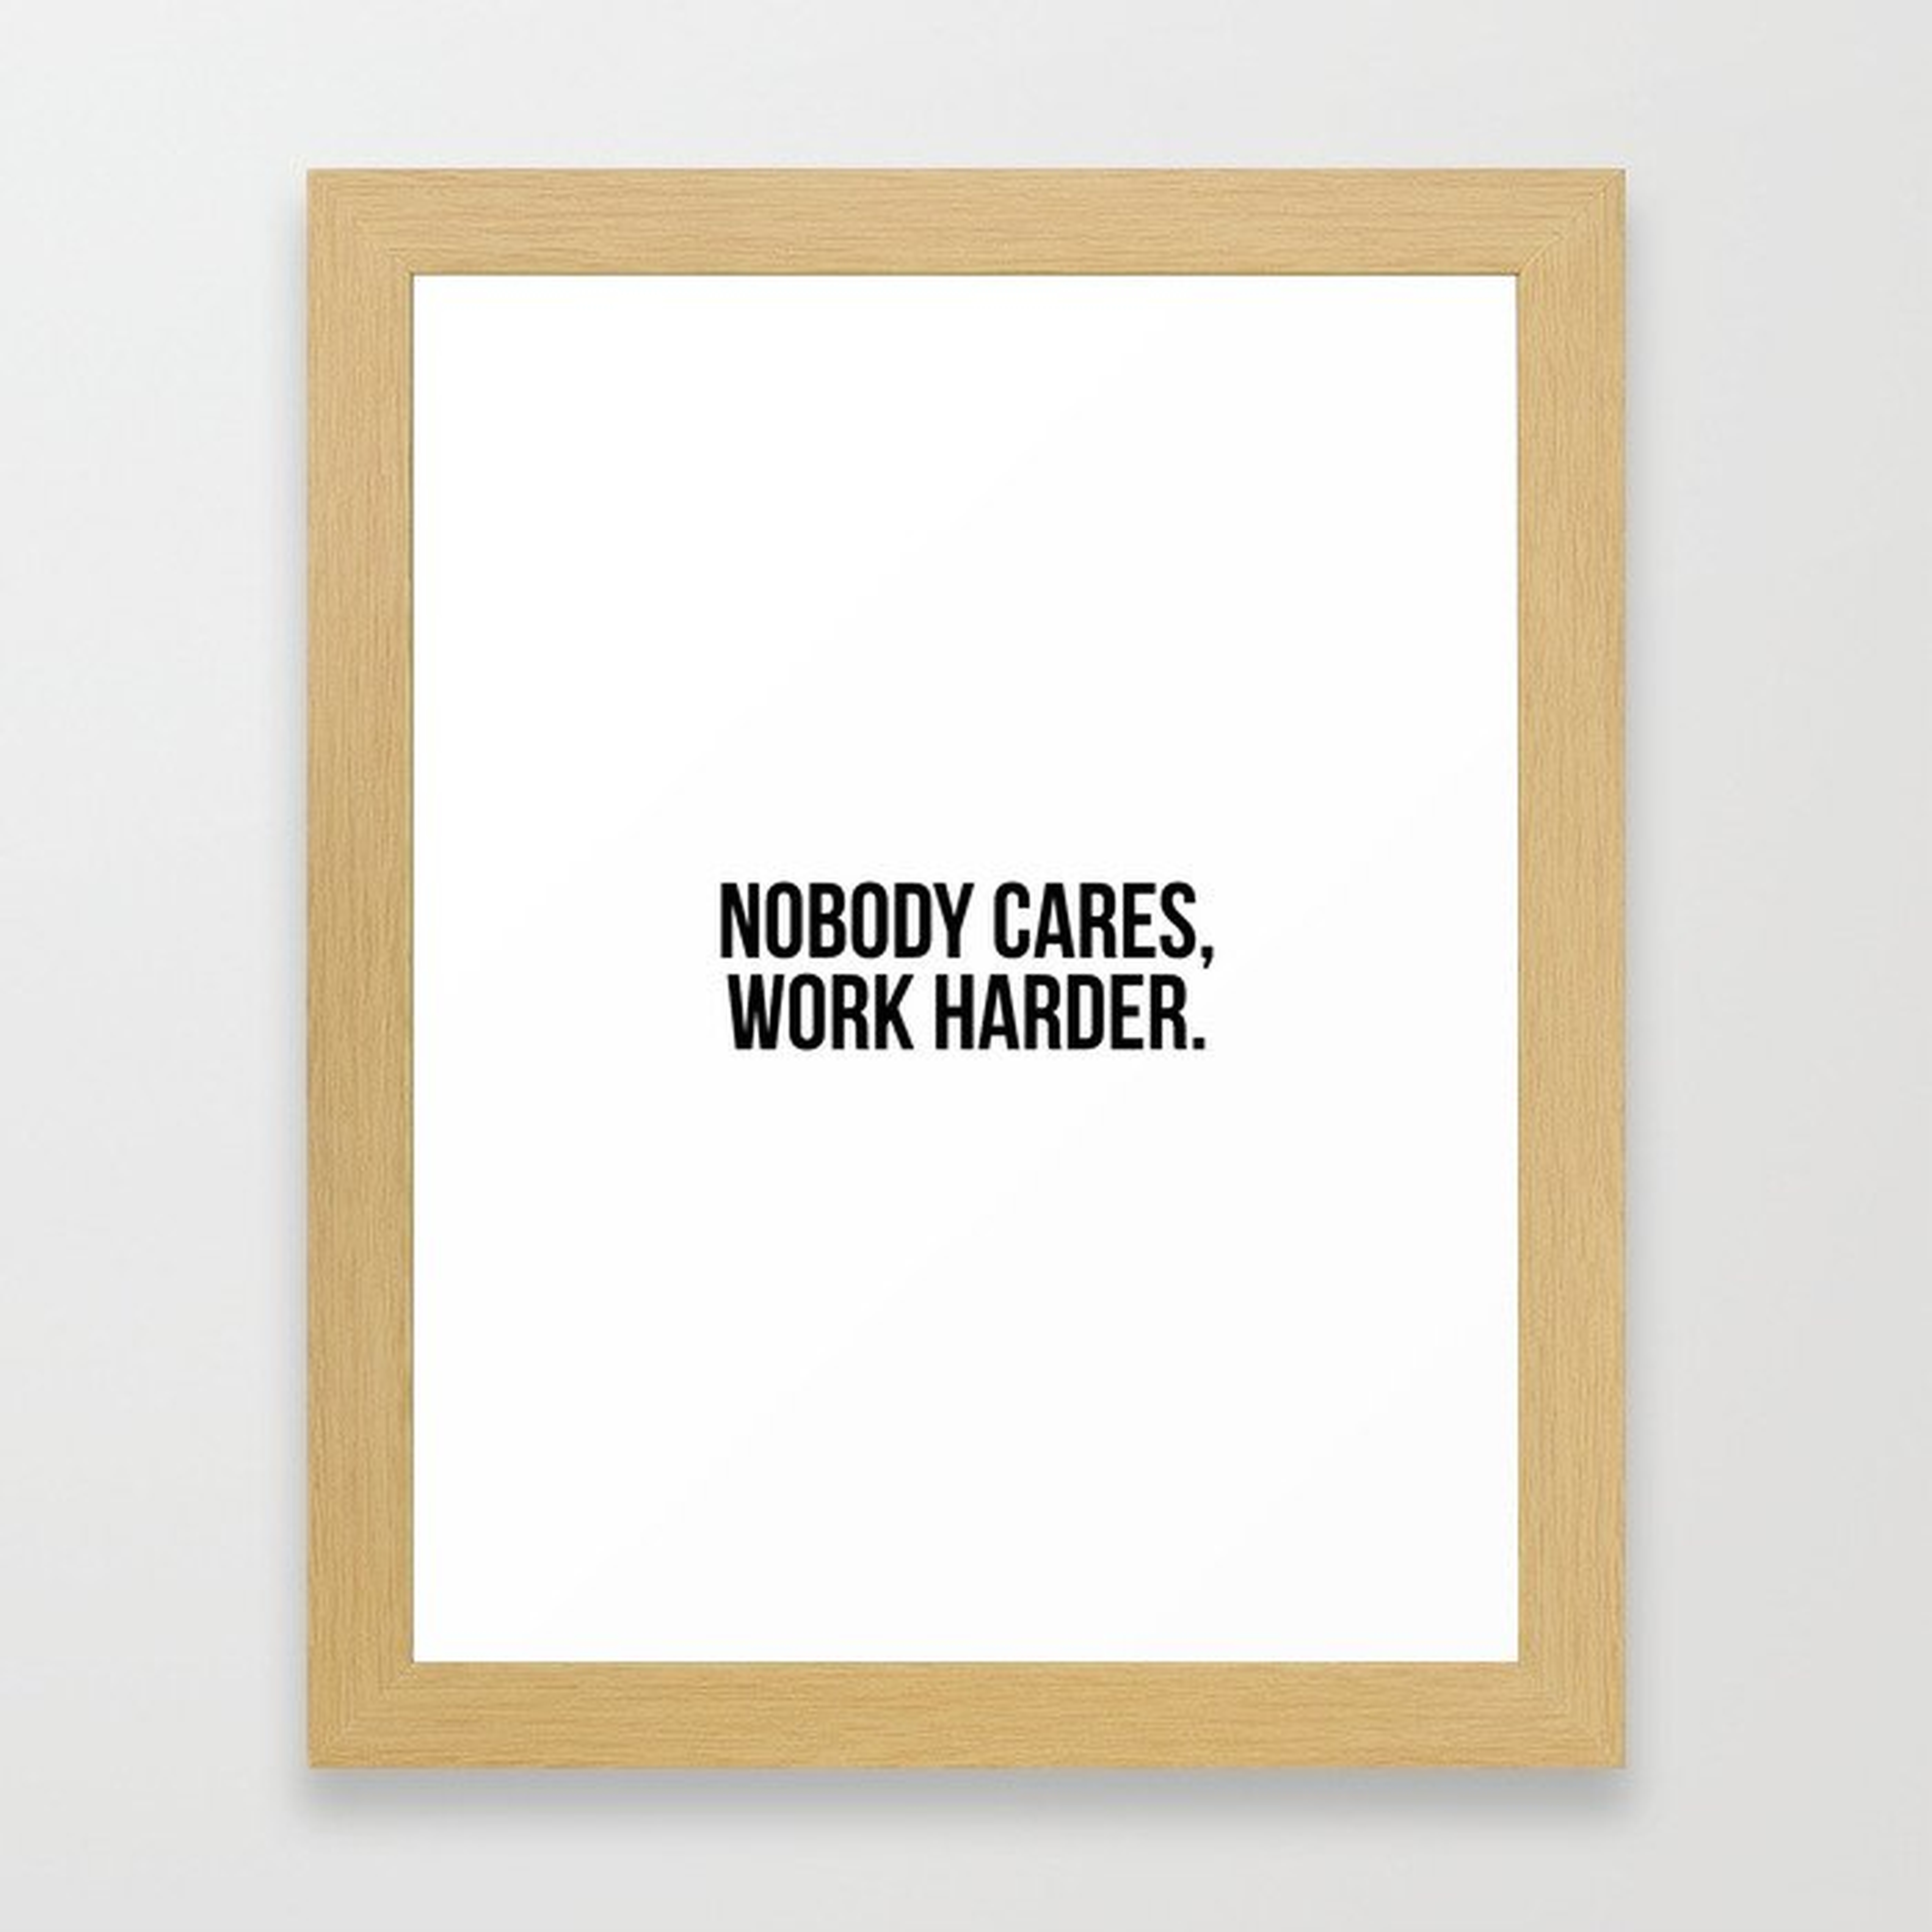 Nobody cares, work harder. Framed Art Print - Society6